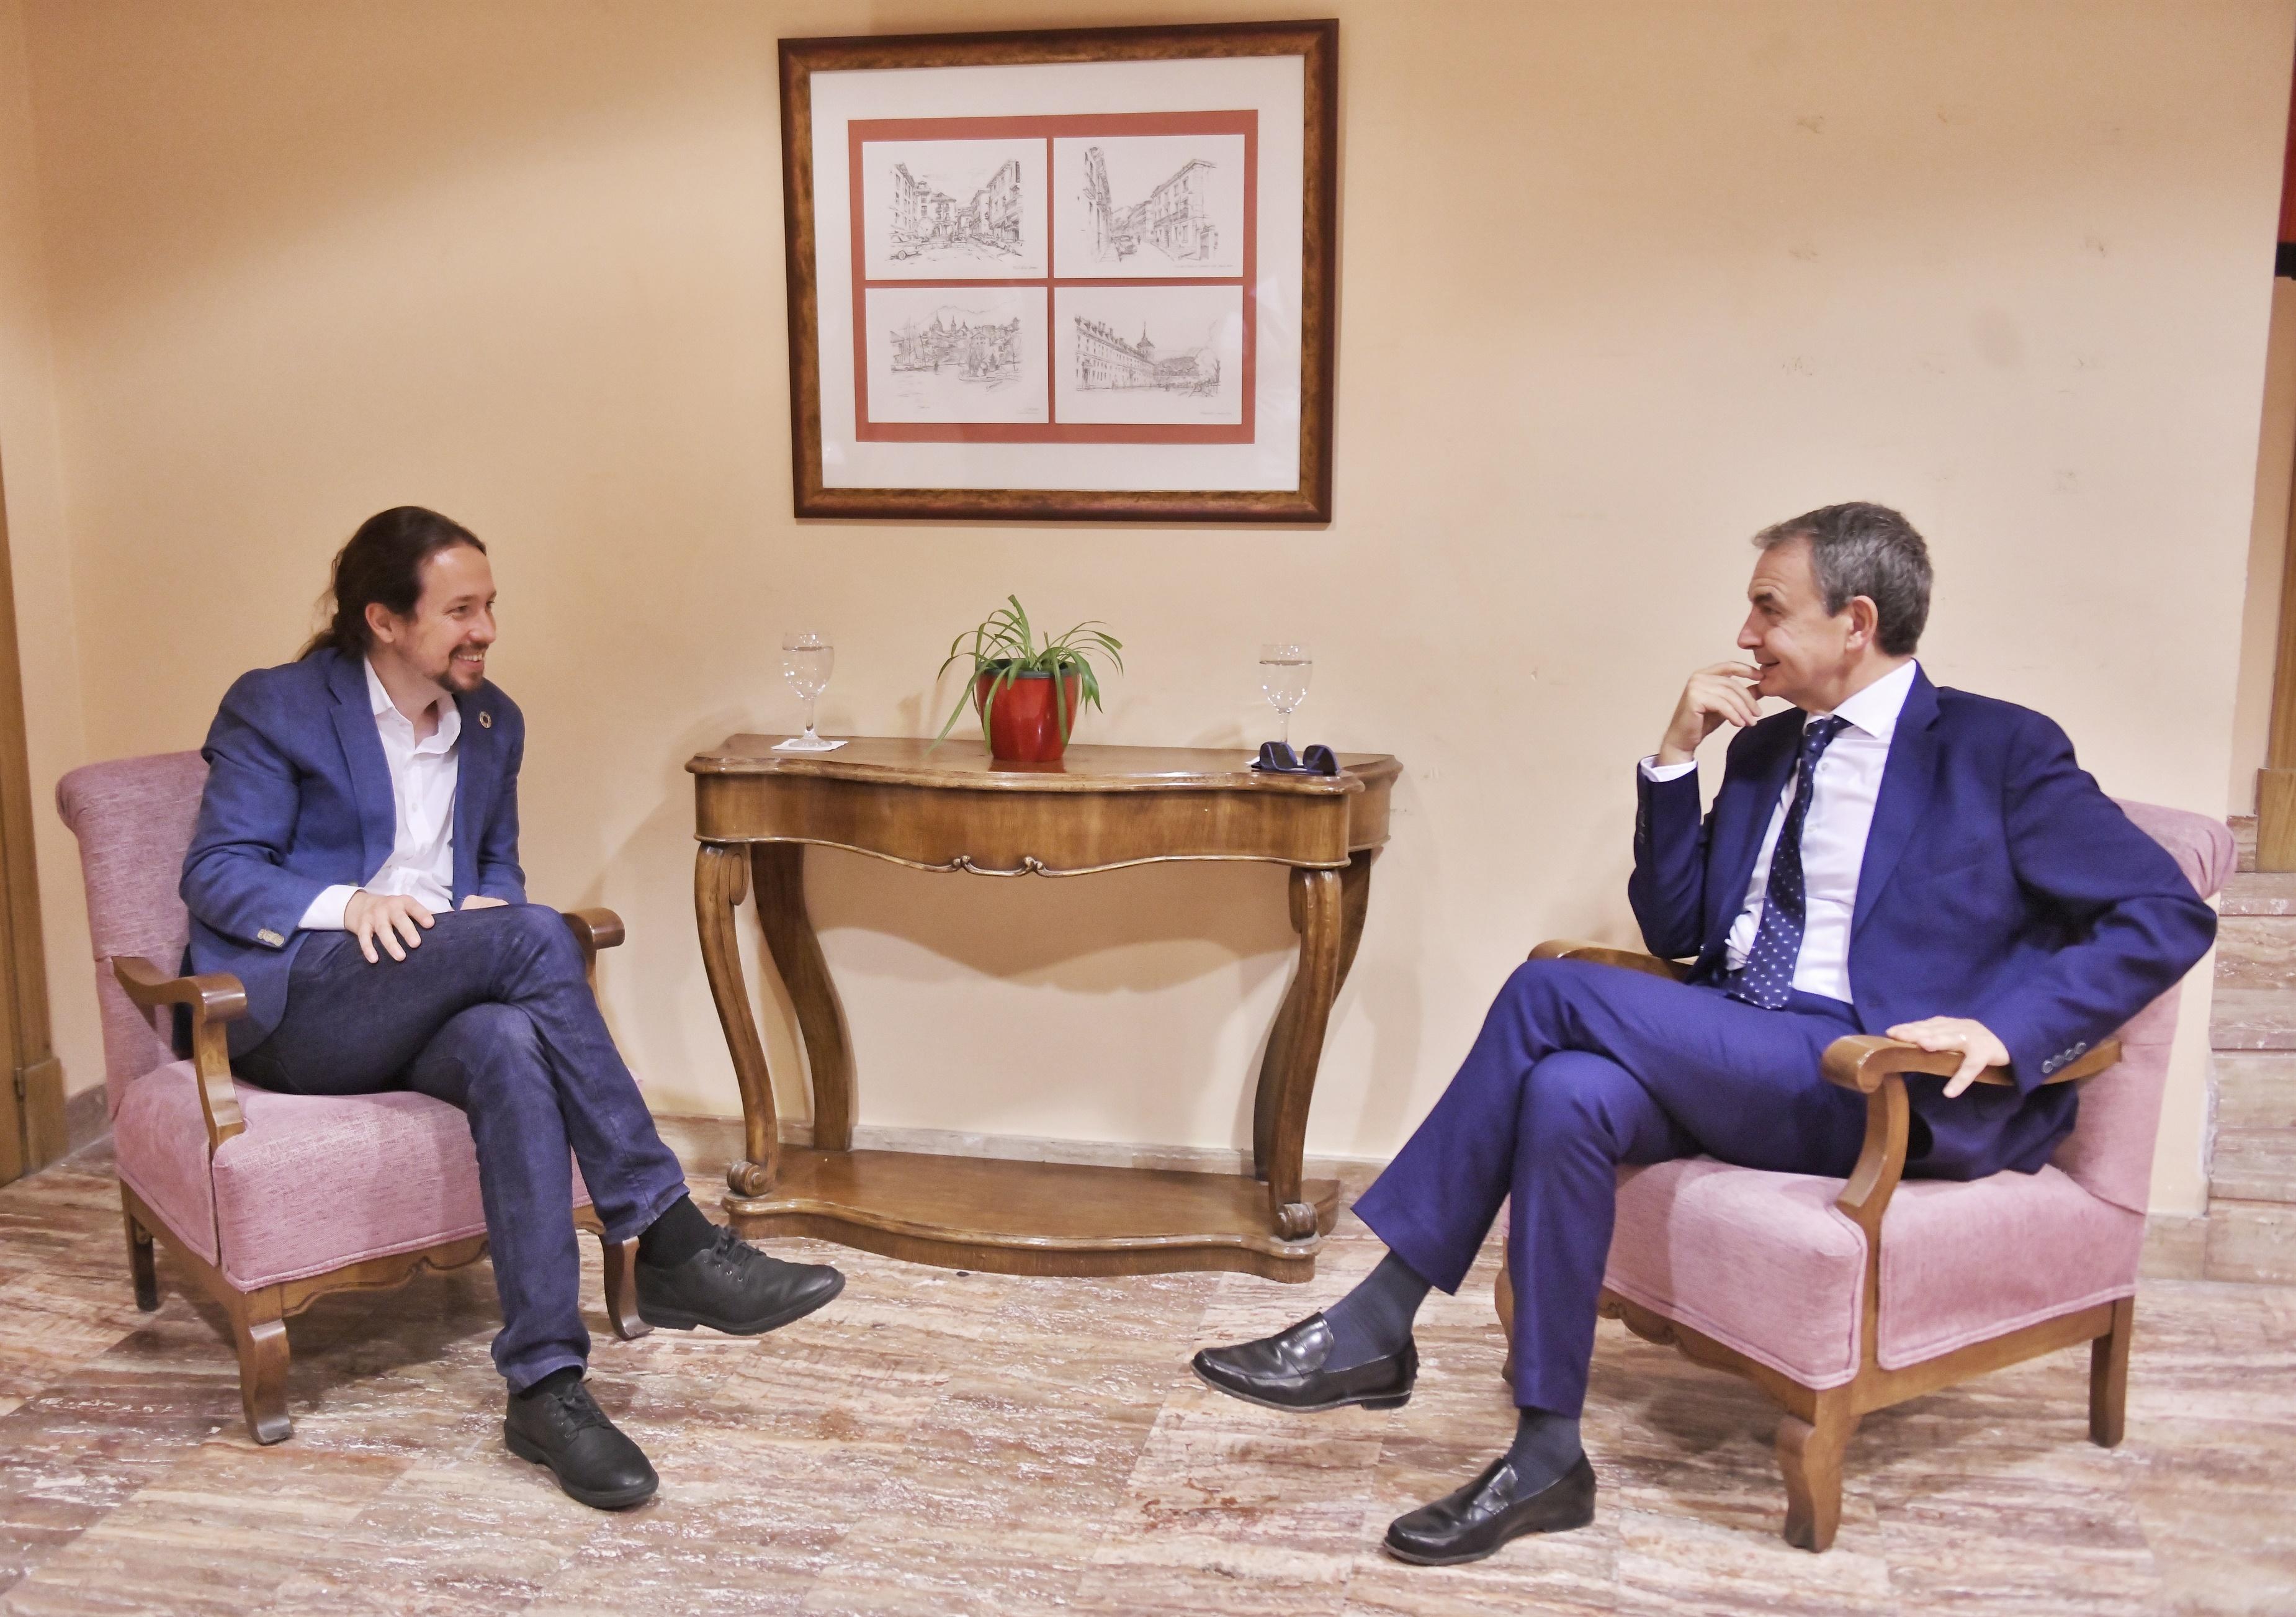 Pablo Iglesias y José Luis Rodríguez Zapatero